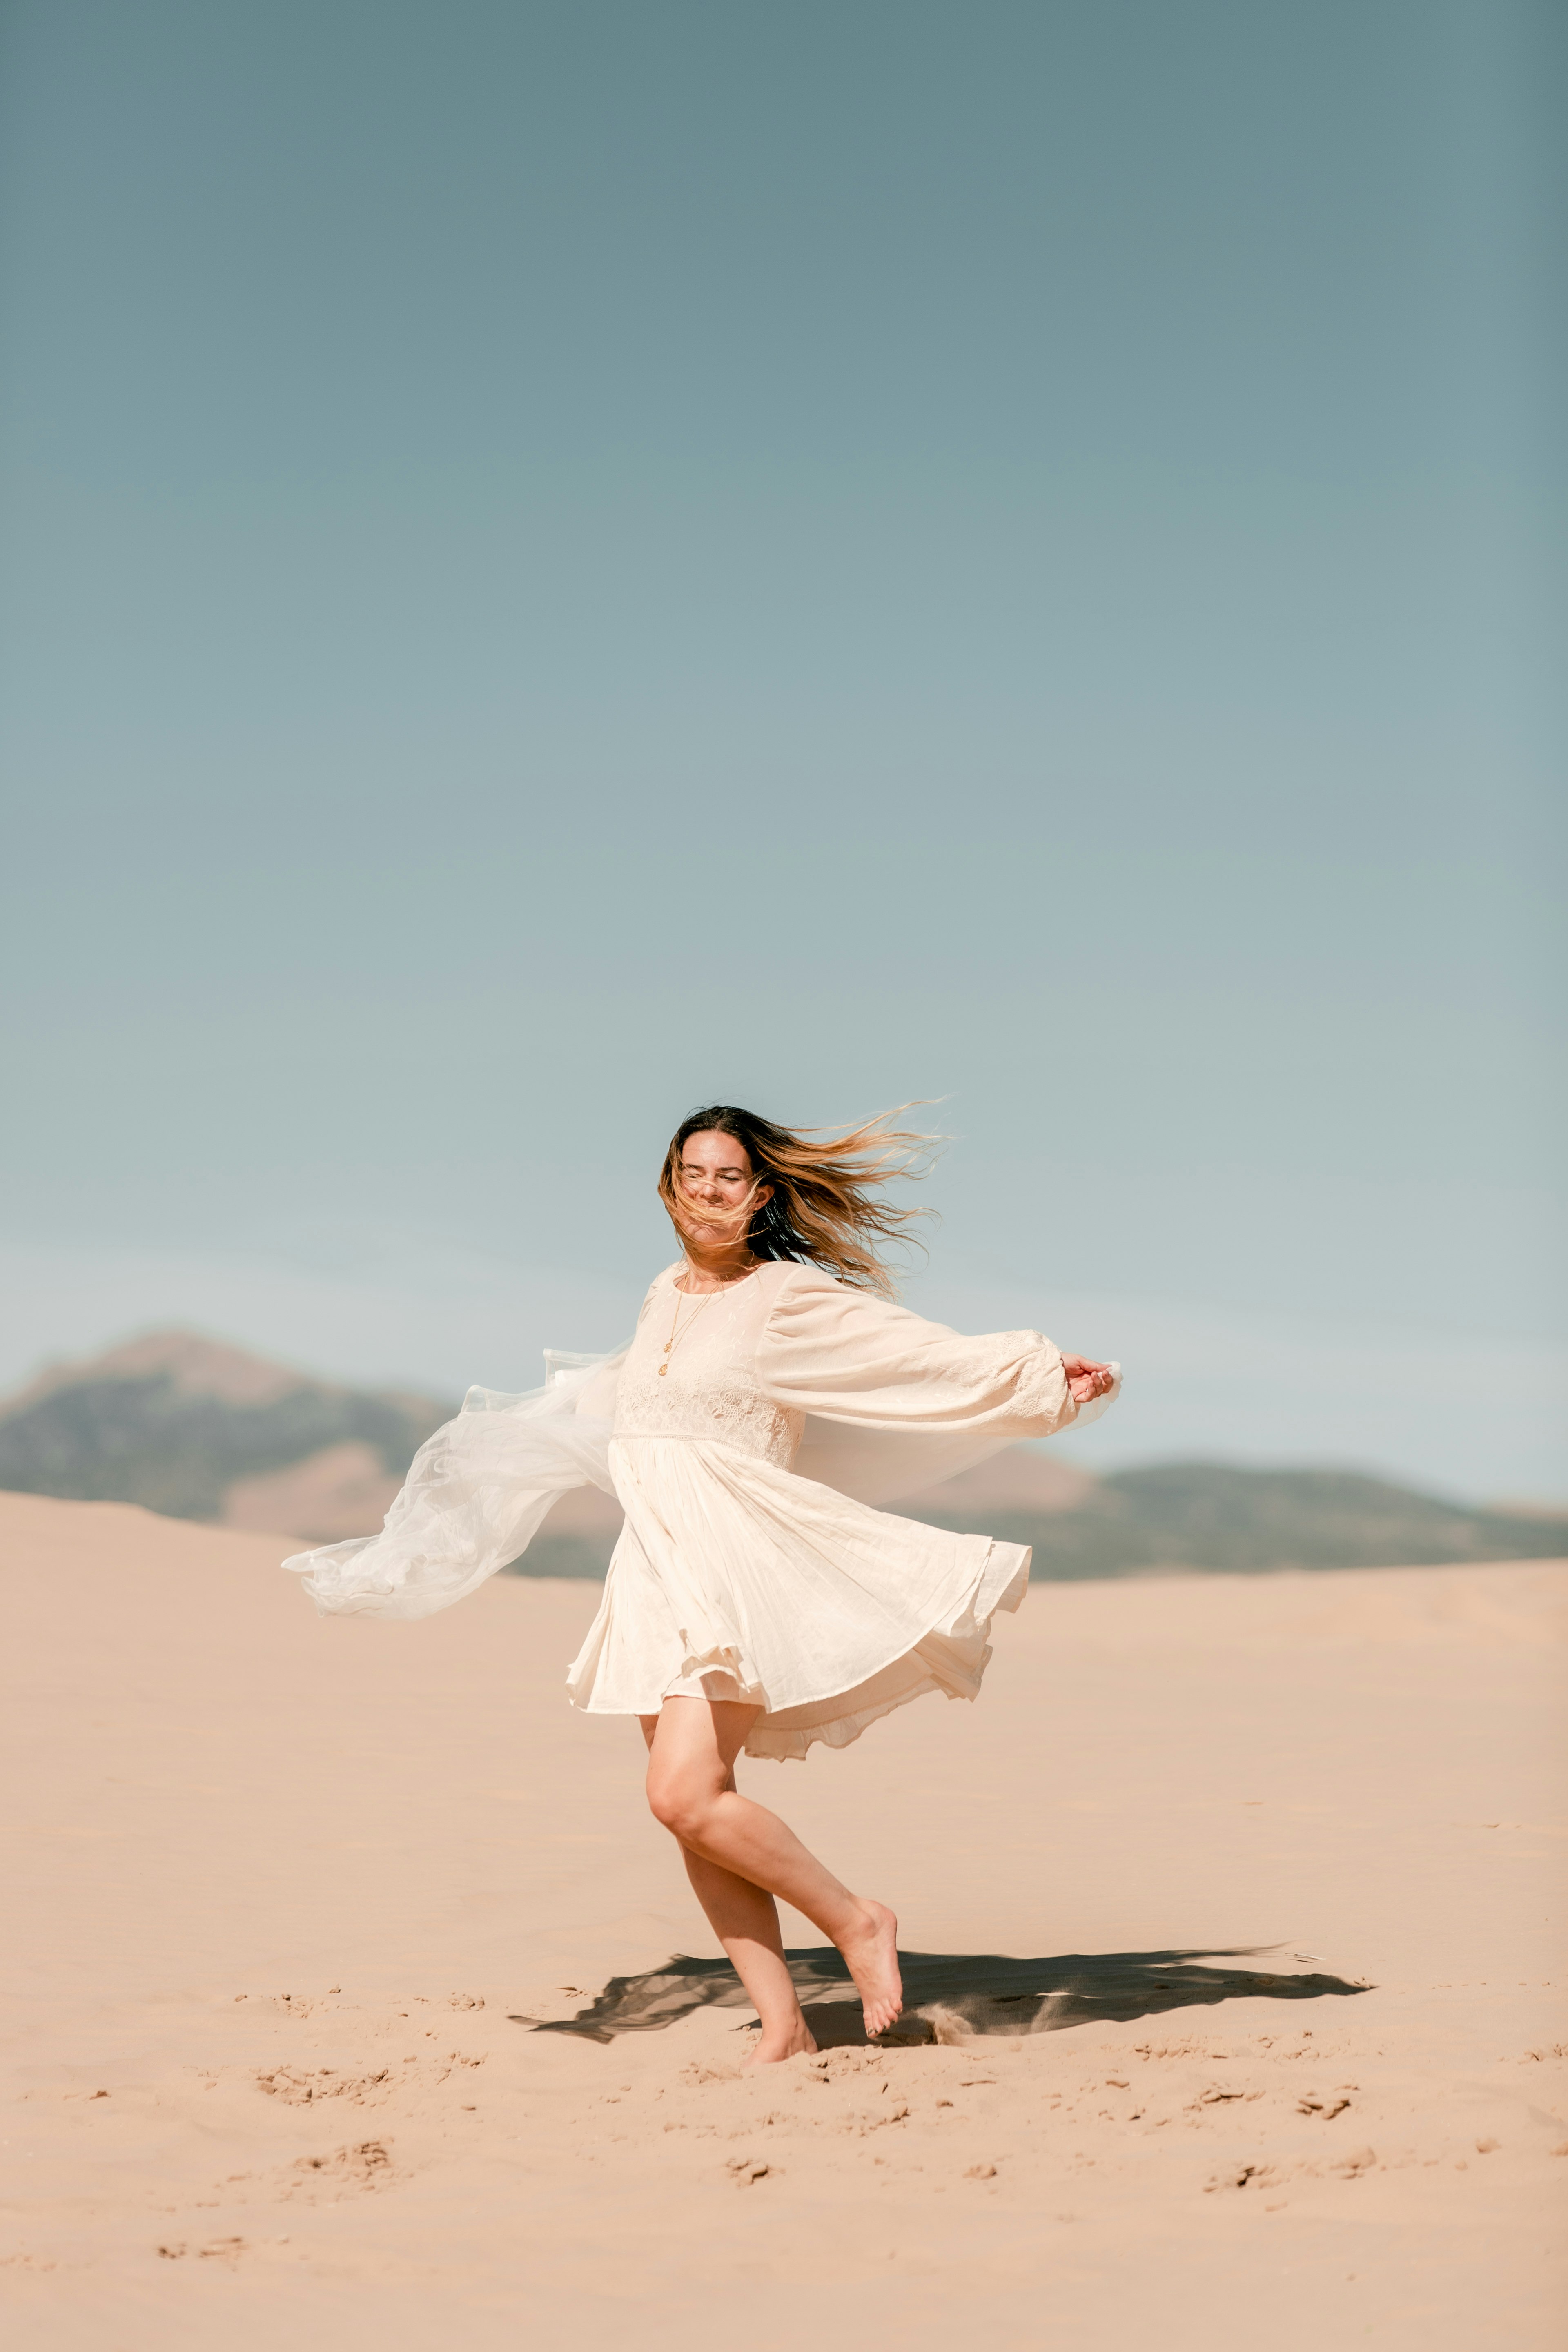 woman in white dress standing on desert